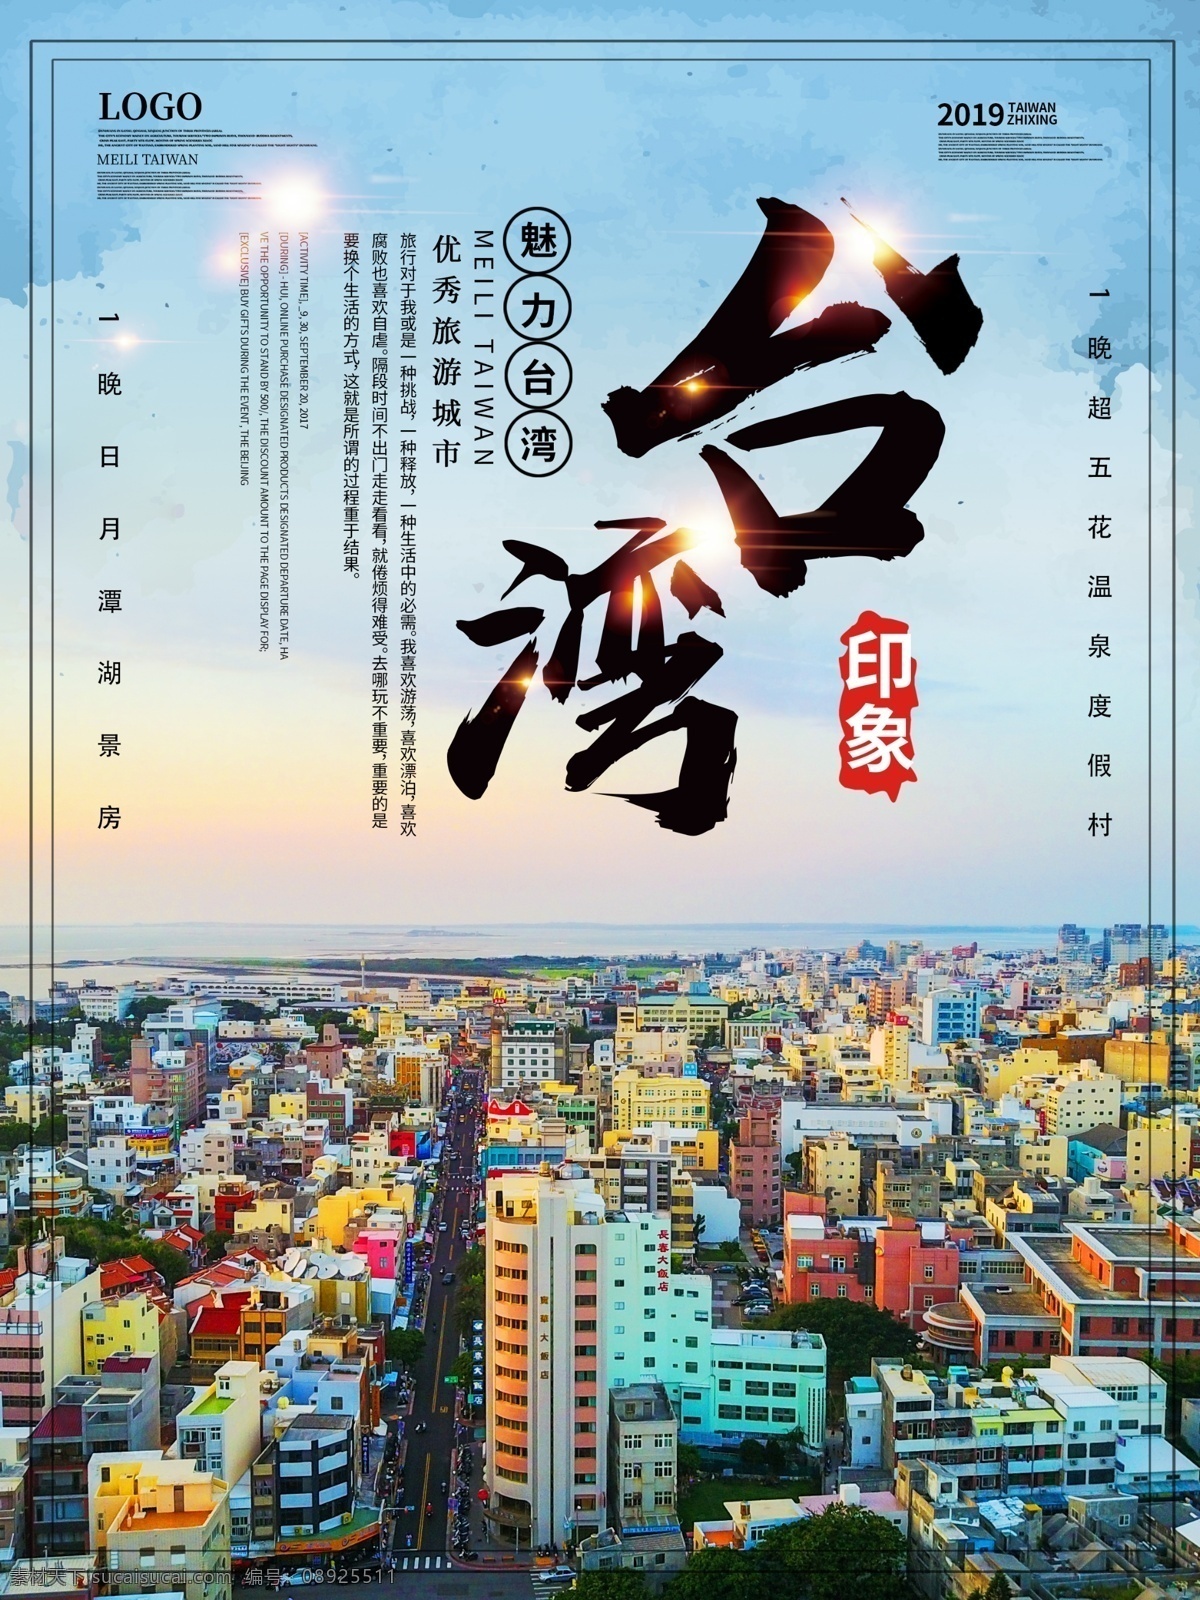 印象 台湾 主题 宣传海报 印象台湾 台湾旅游 旅游